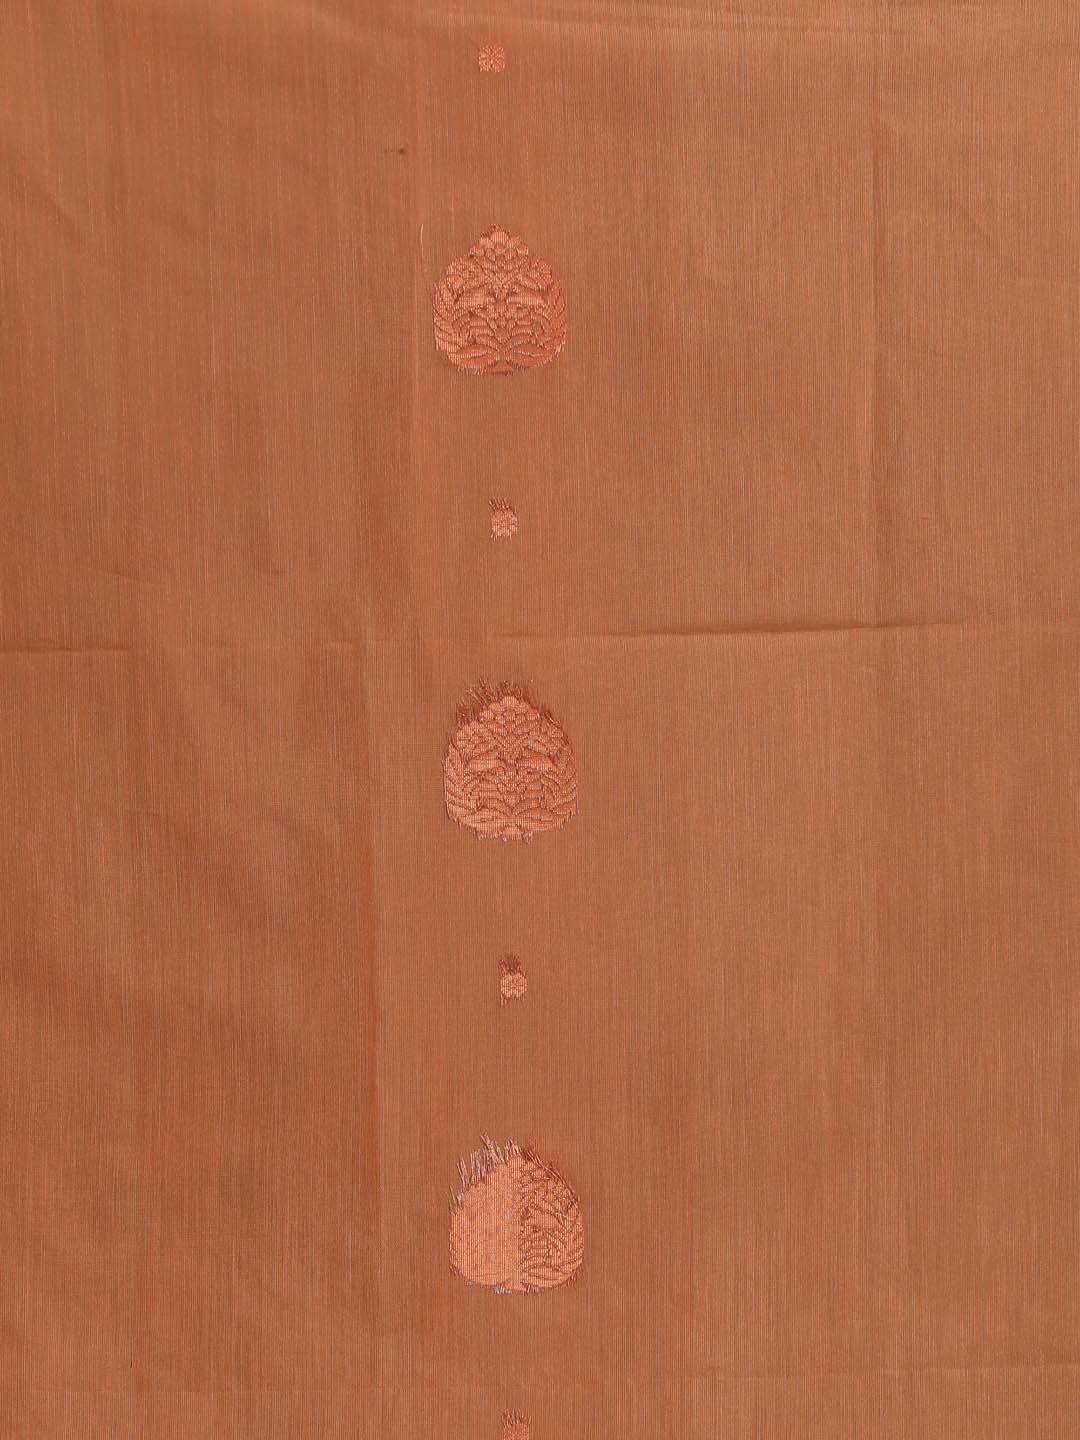 Indethnic Peach Pochampally Kora Silk by Cotton Saree - Saree Detail View